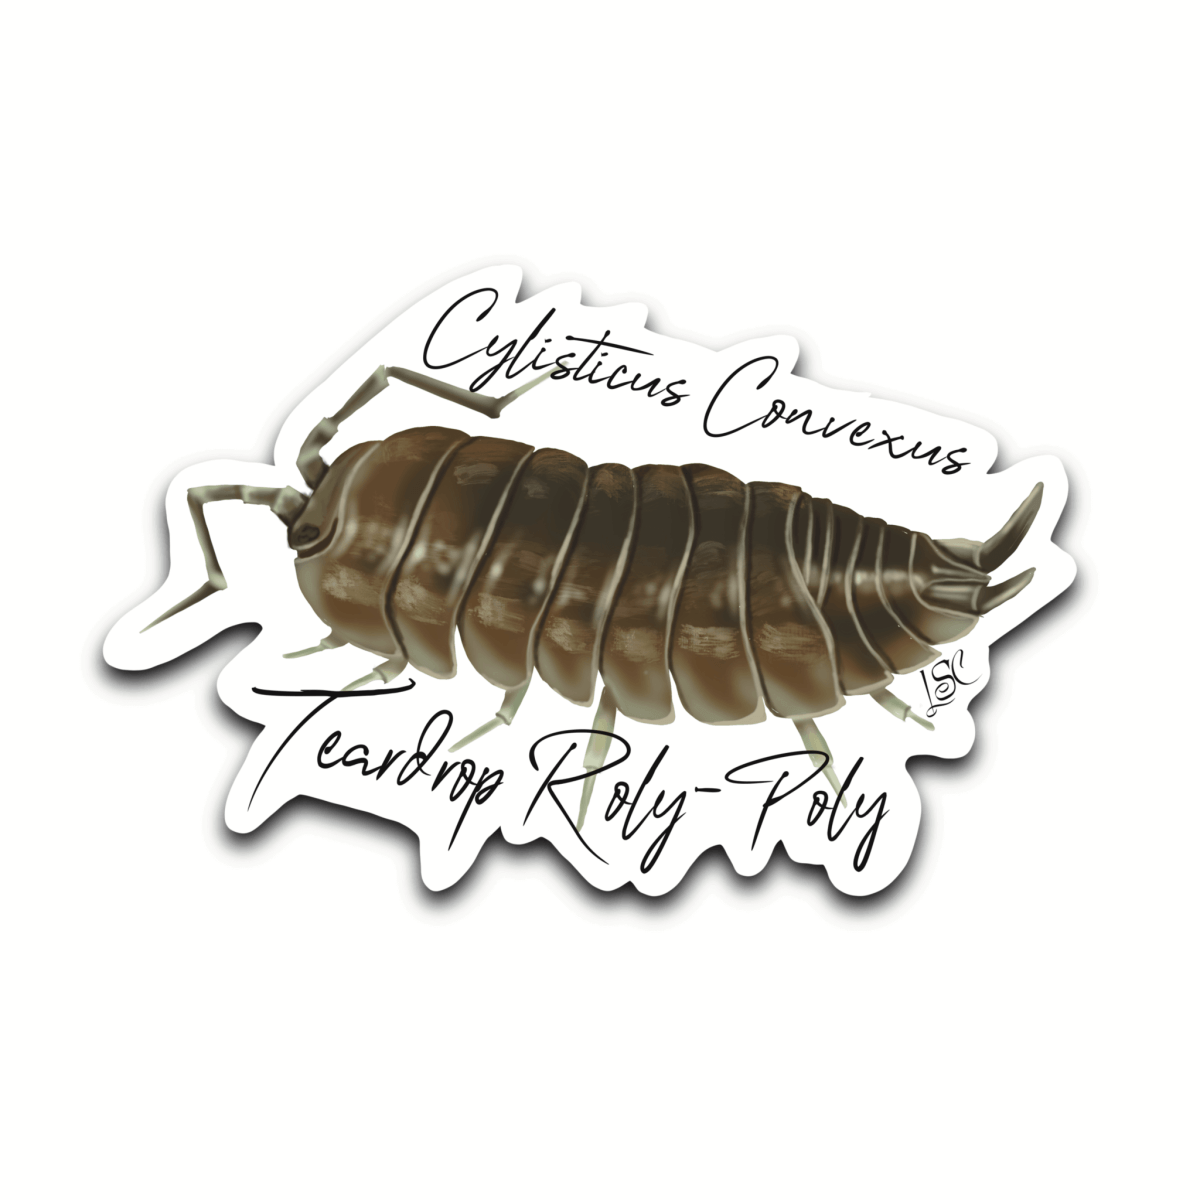 Teardrop Roly-Poly Isopod Sticker - Colour Sticker - Little Shop of Curiosity